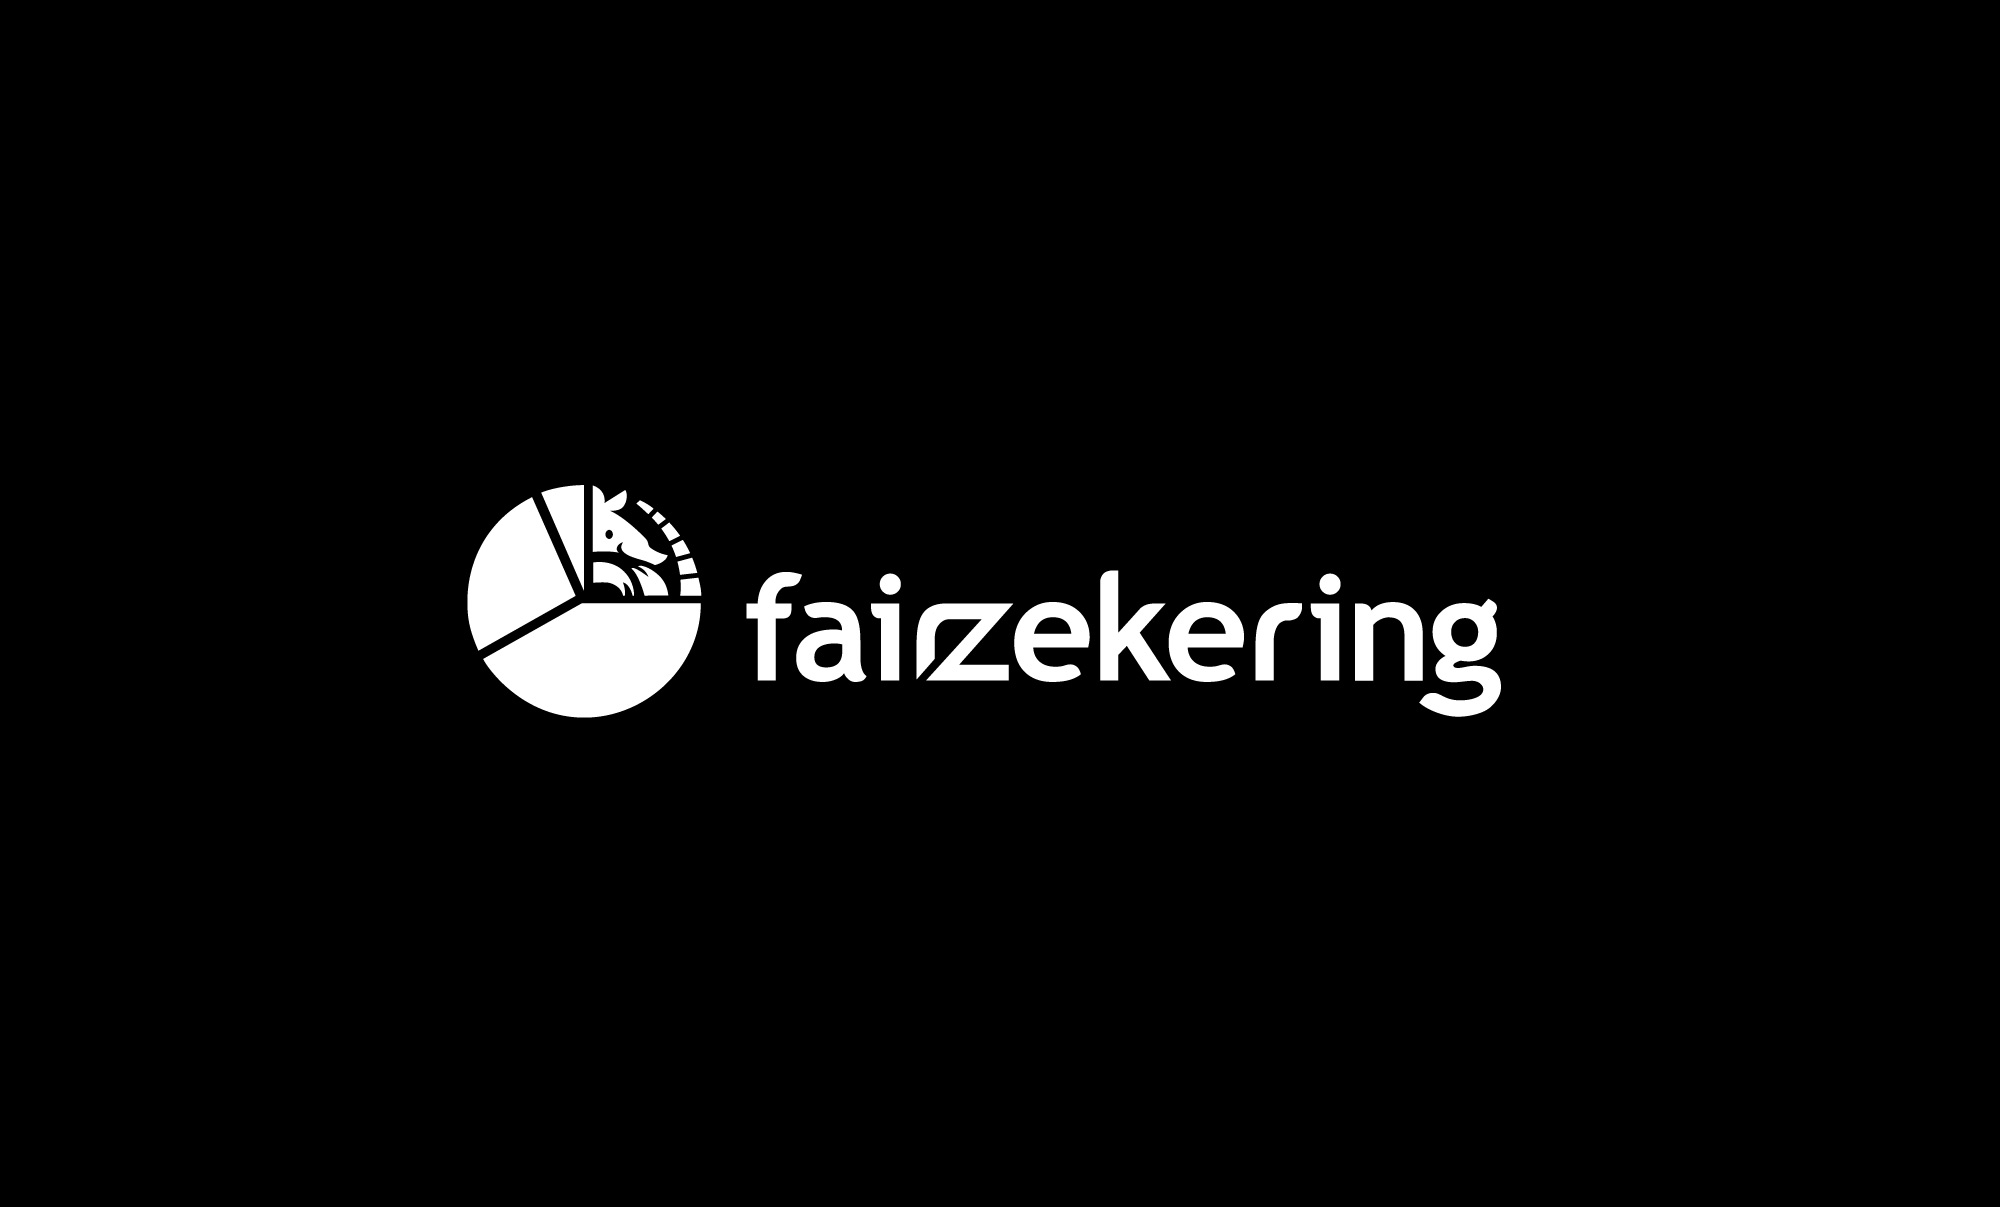 Fairzekering logo